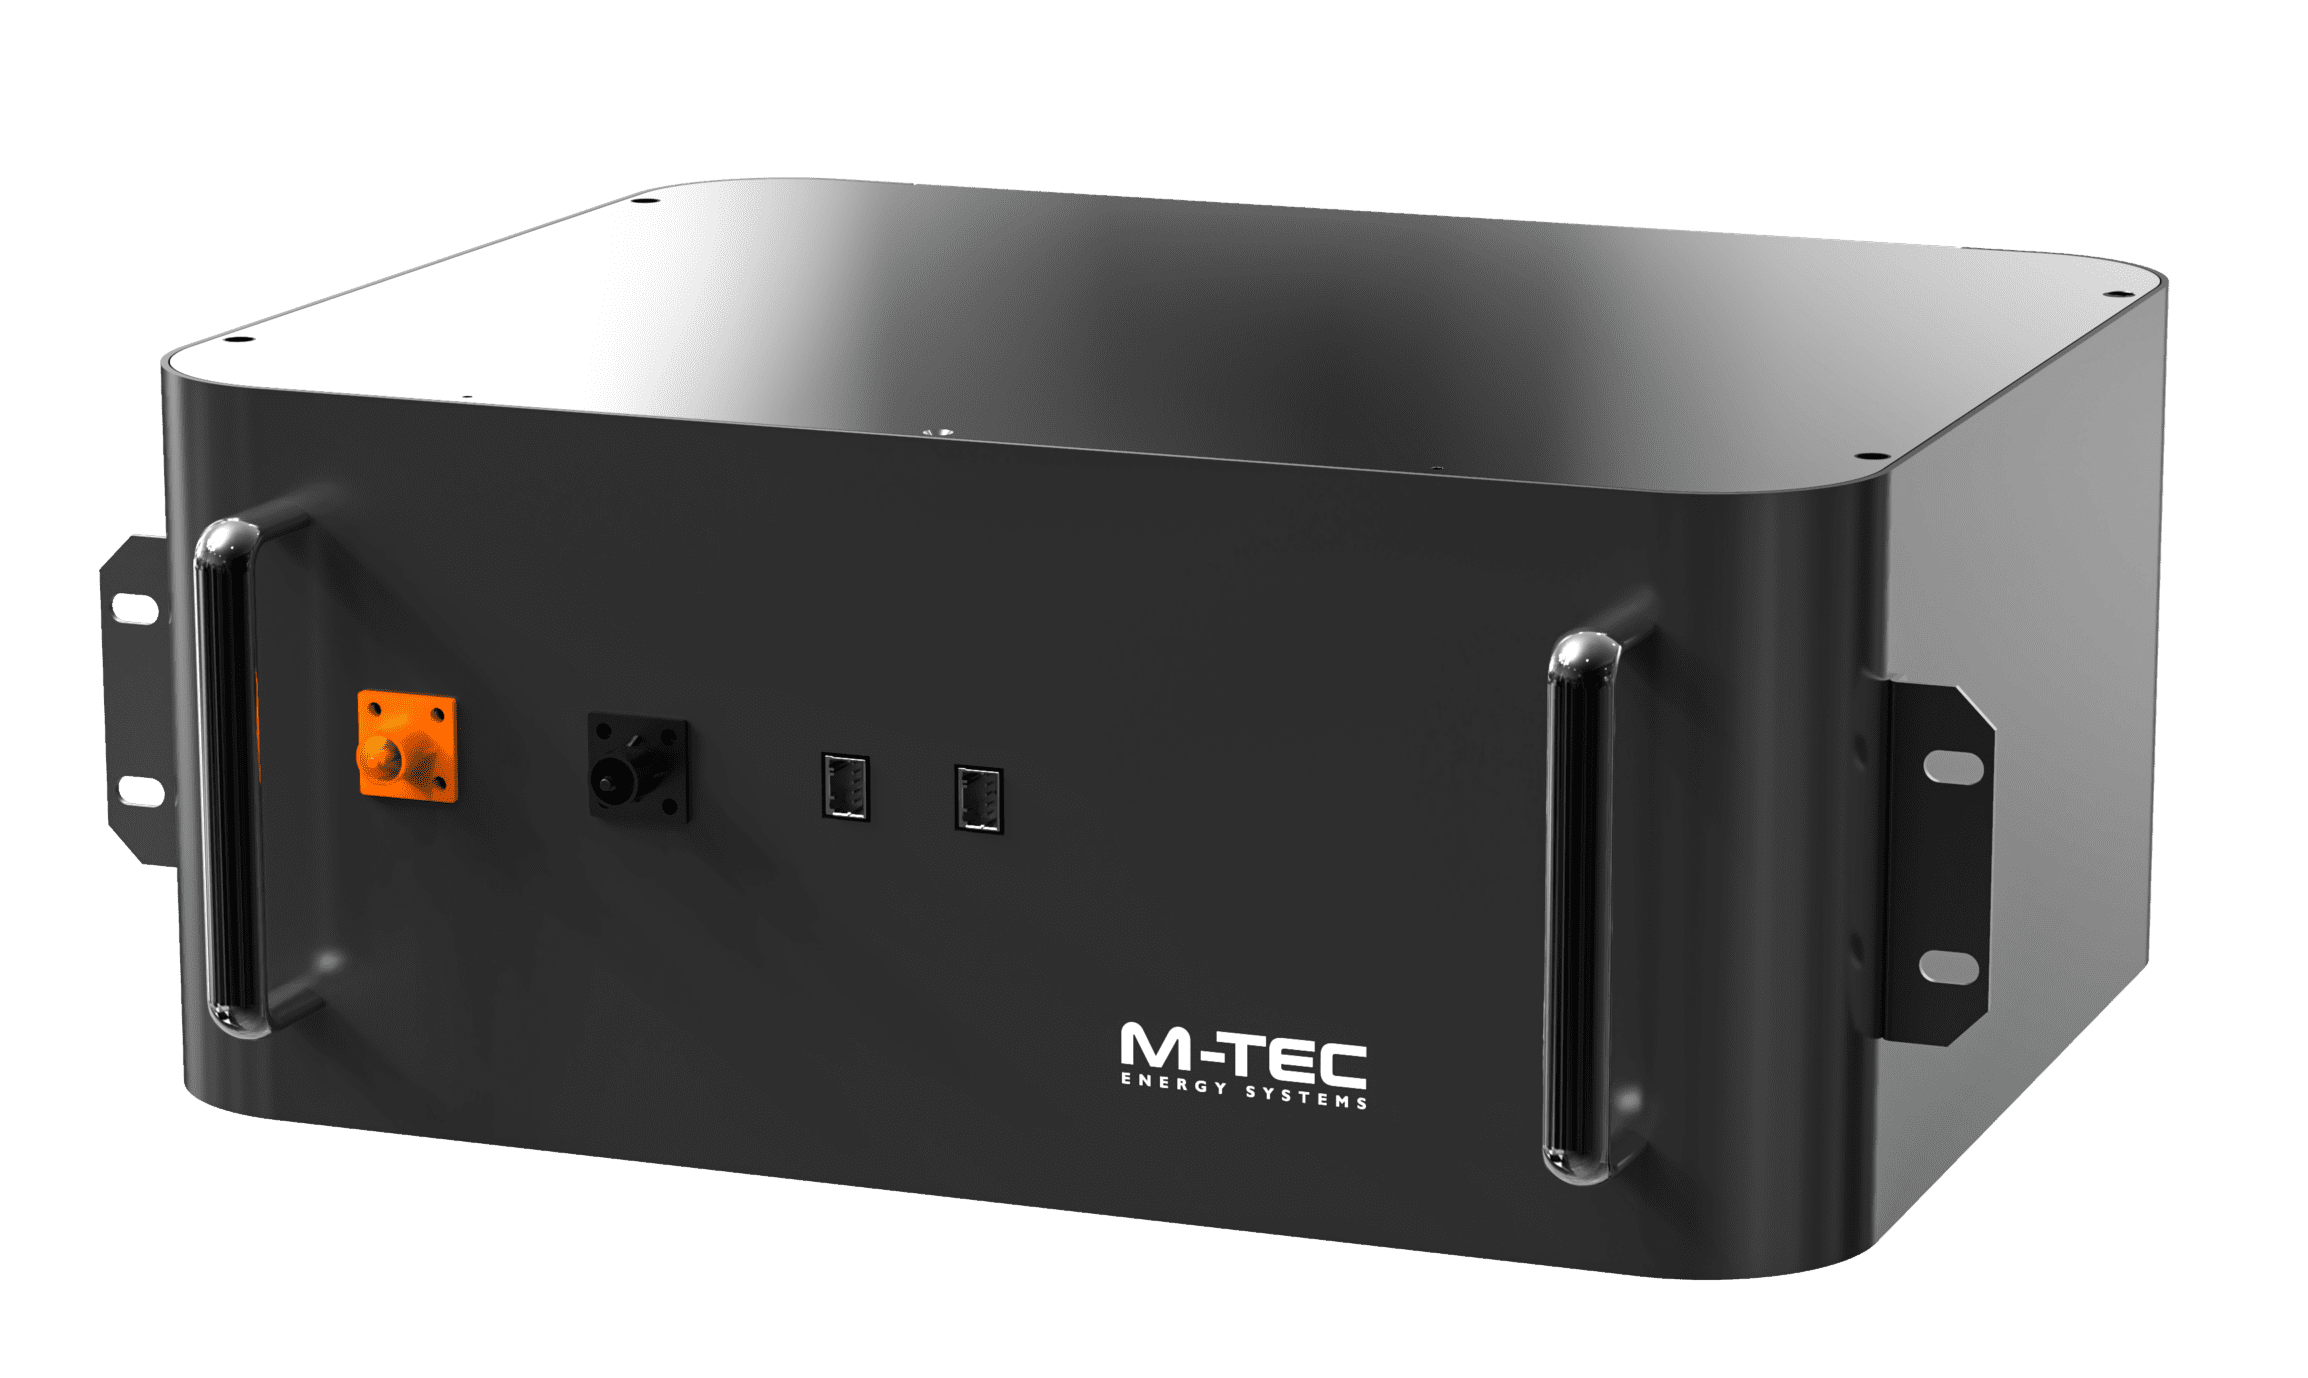 pequeño bloque de energía modular negro. la parte frontal del dispositivo presenta pequeños conectores y el logotipo blanco de M-TEC.